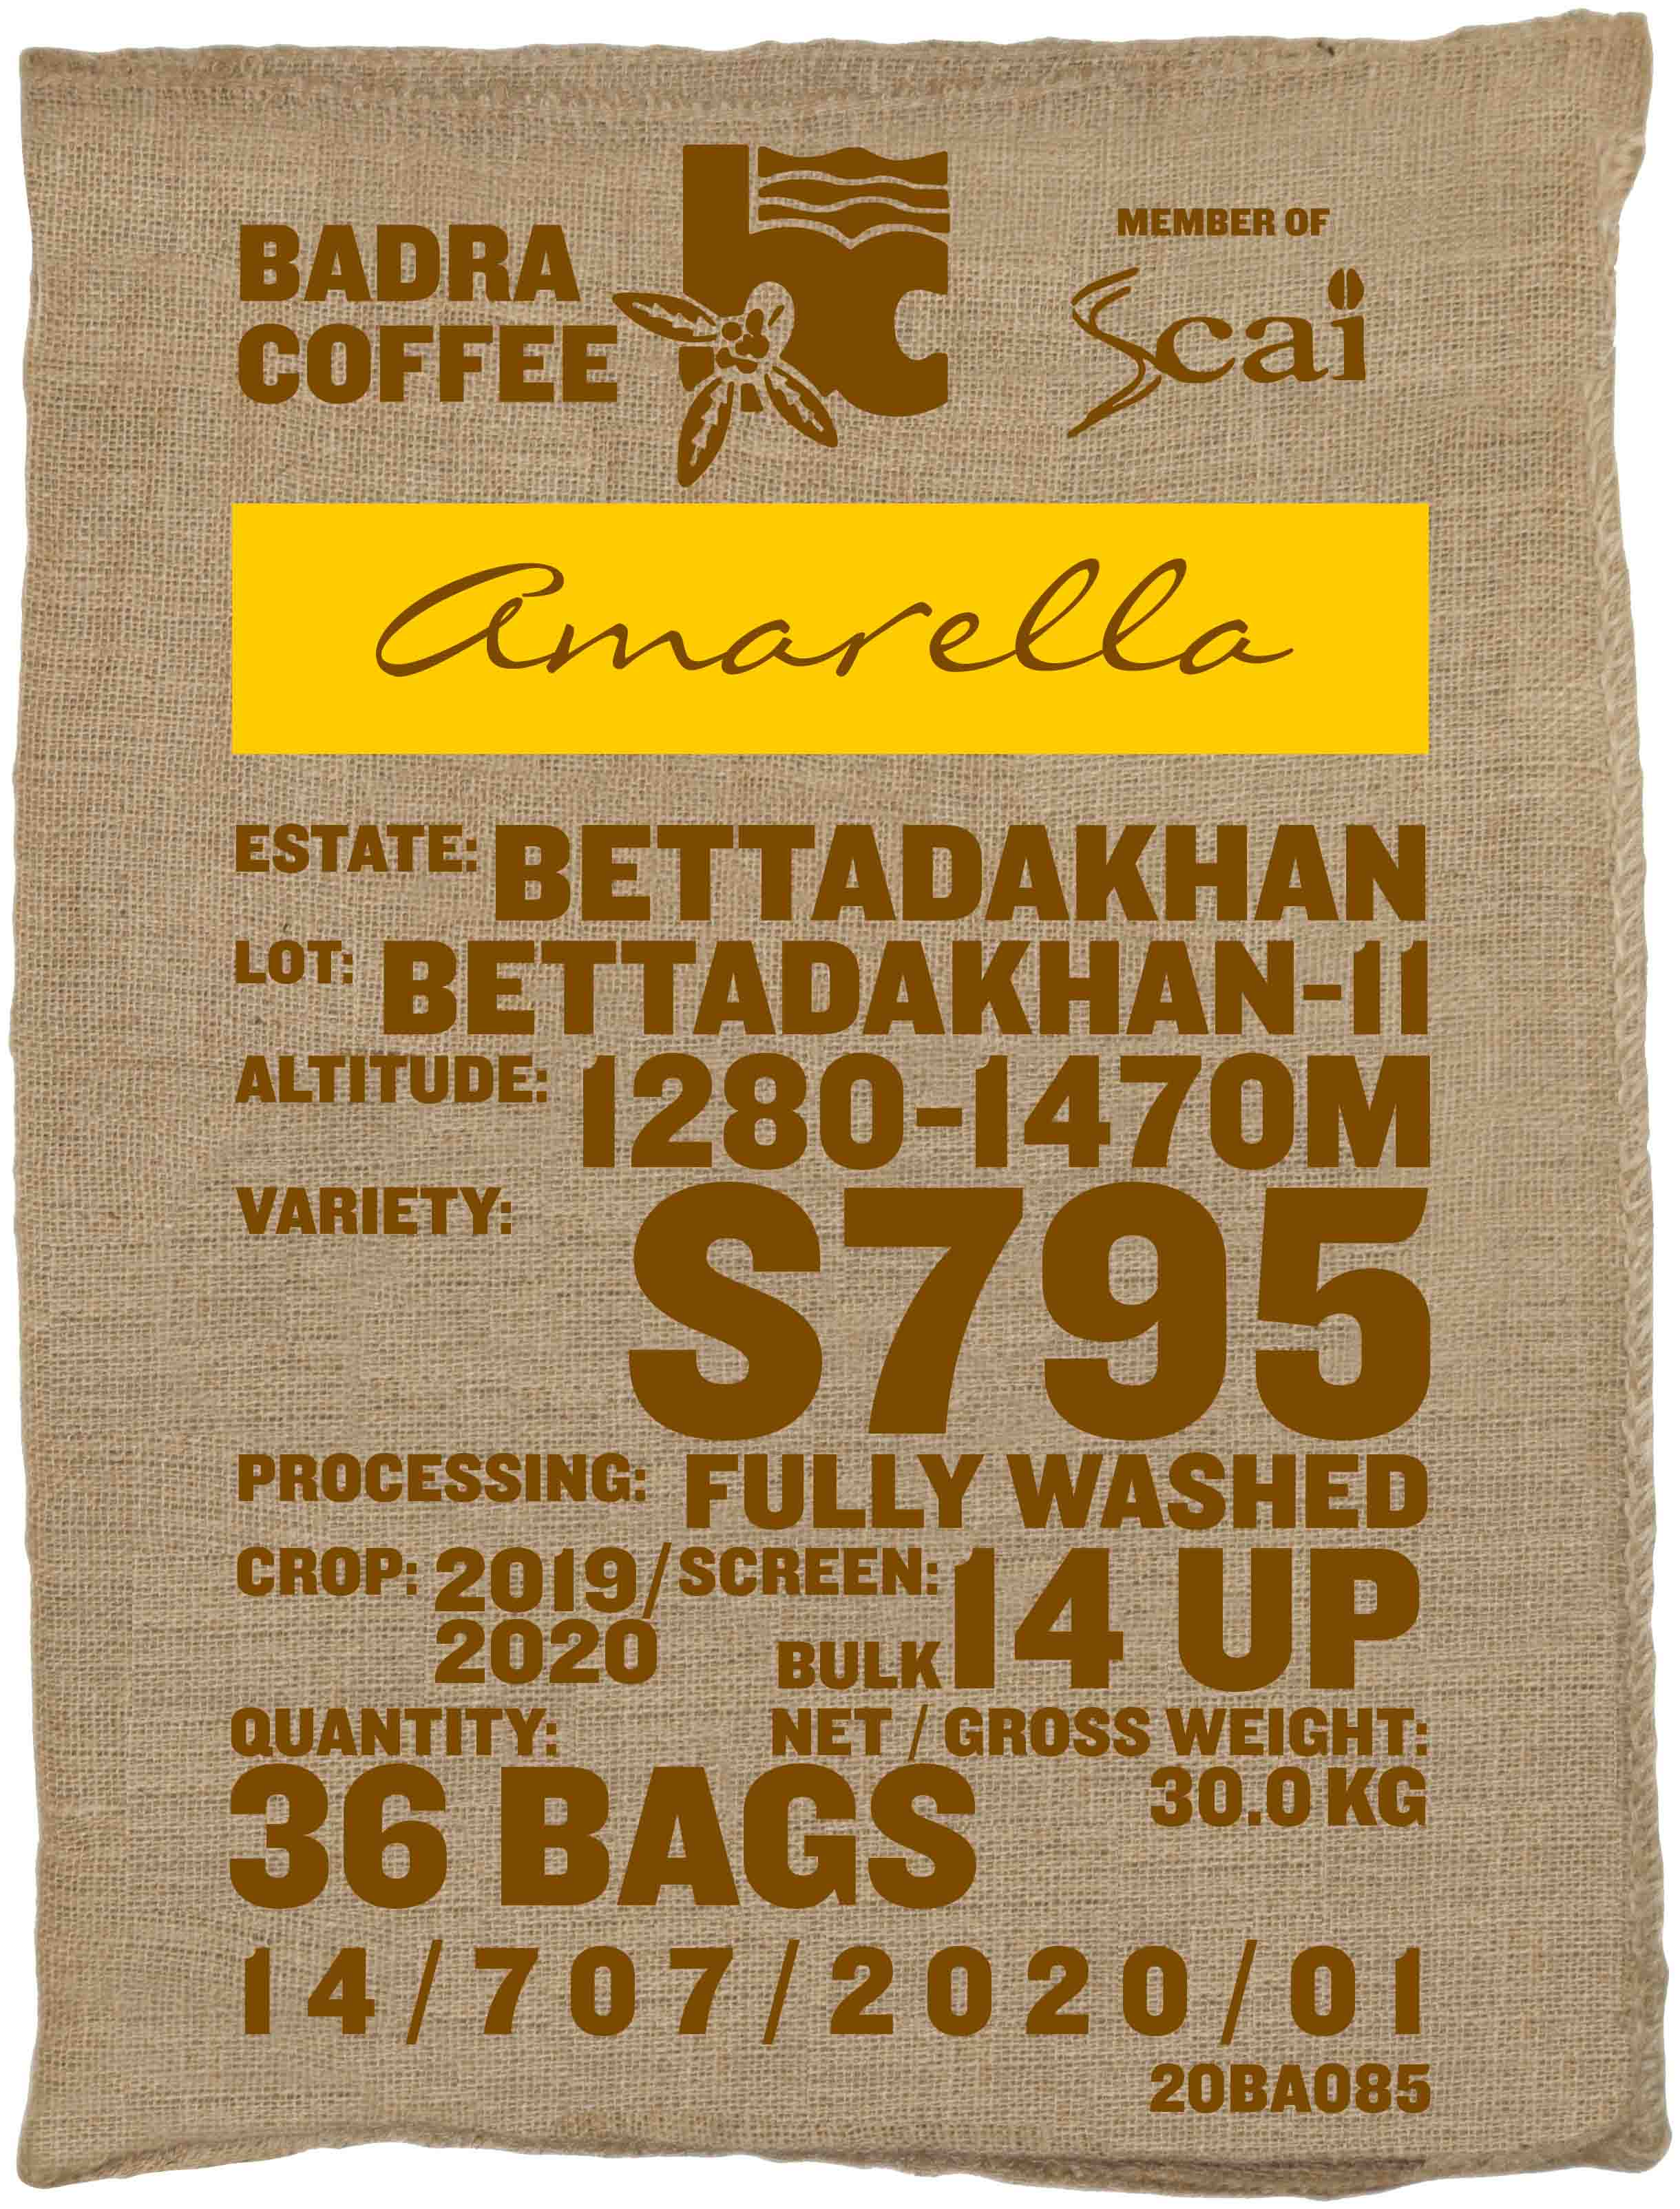 Ein Rohkaffeesack amarella Parzellenkaffee Varietät S795. Bara Estates Lot Bettadakhan 11.